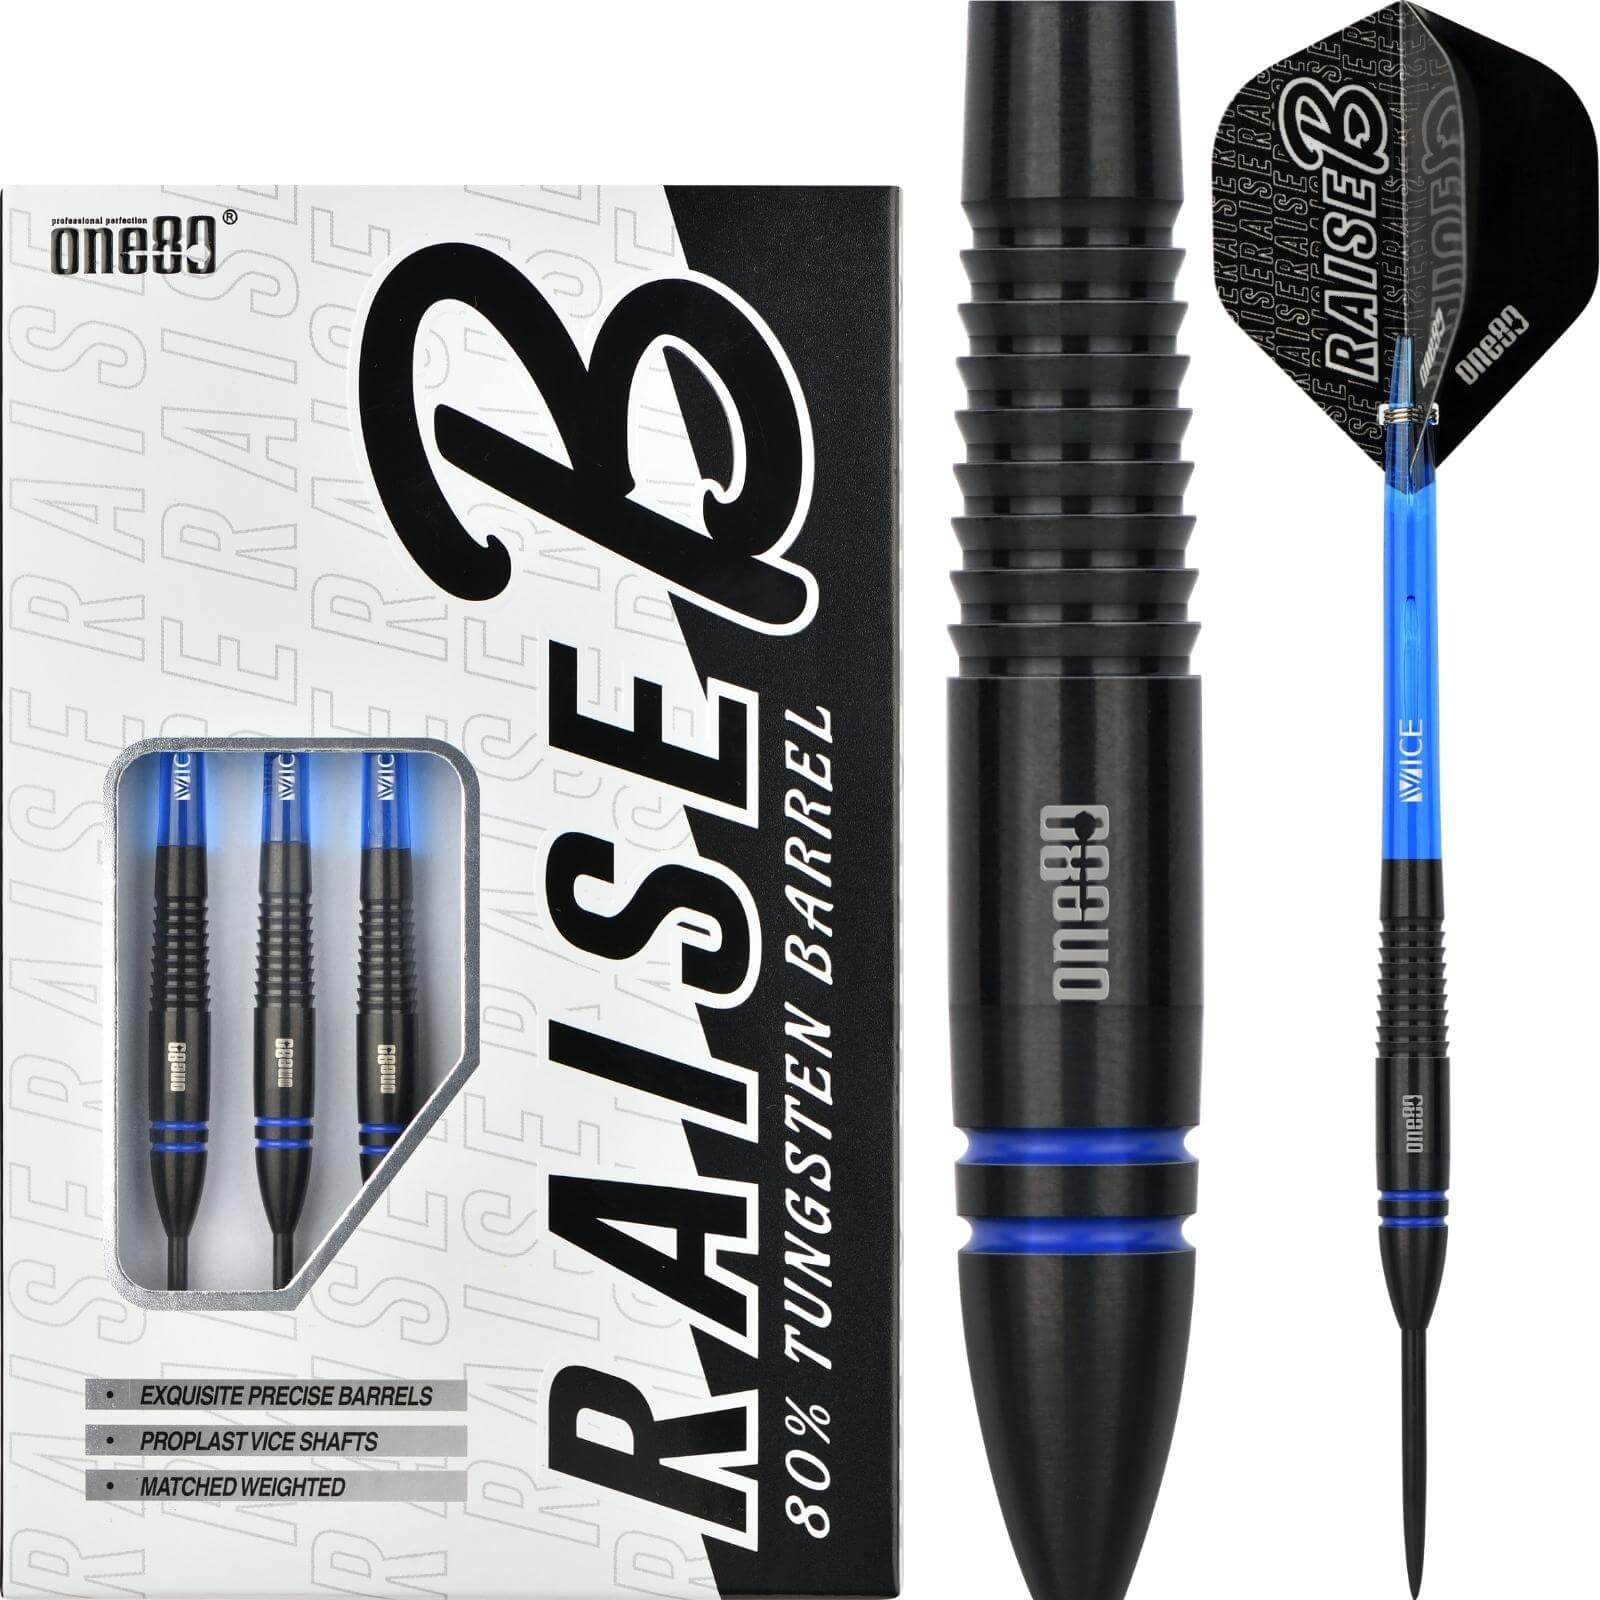 Darts - One80 - Raise B Darts - Blue - Steel Tip - 80% Tungsten - 21g 23g 